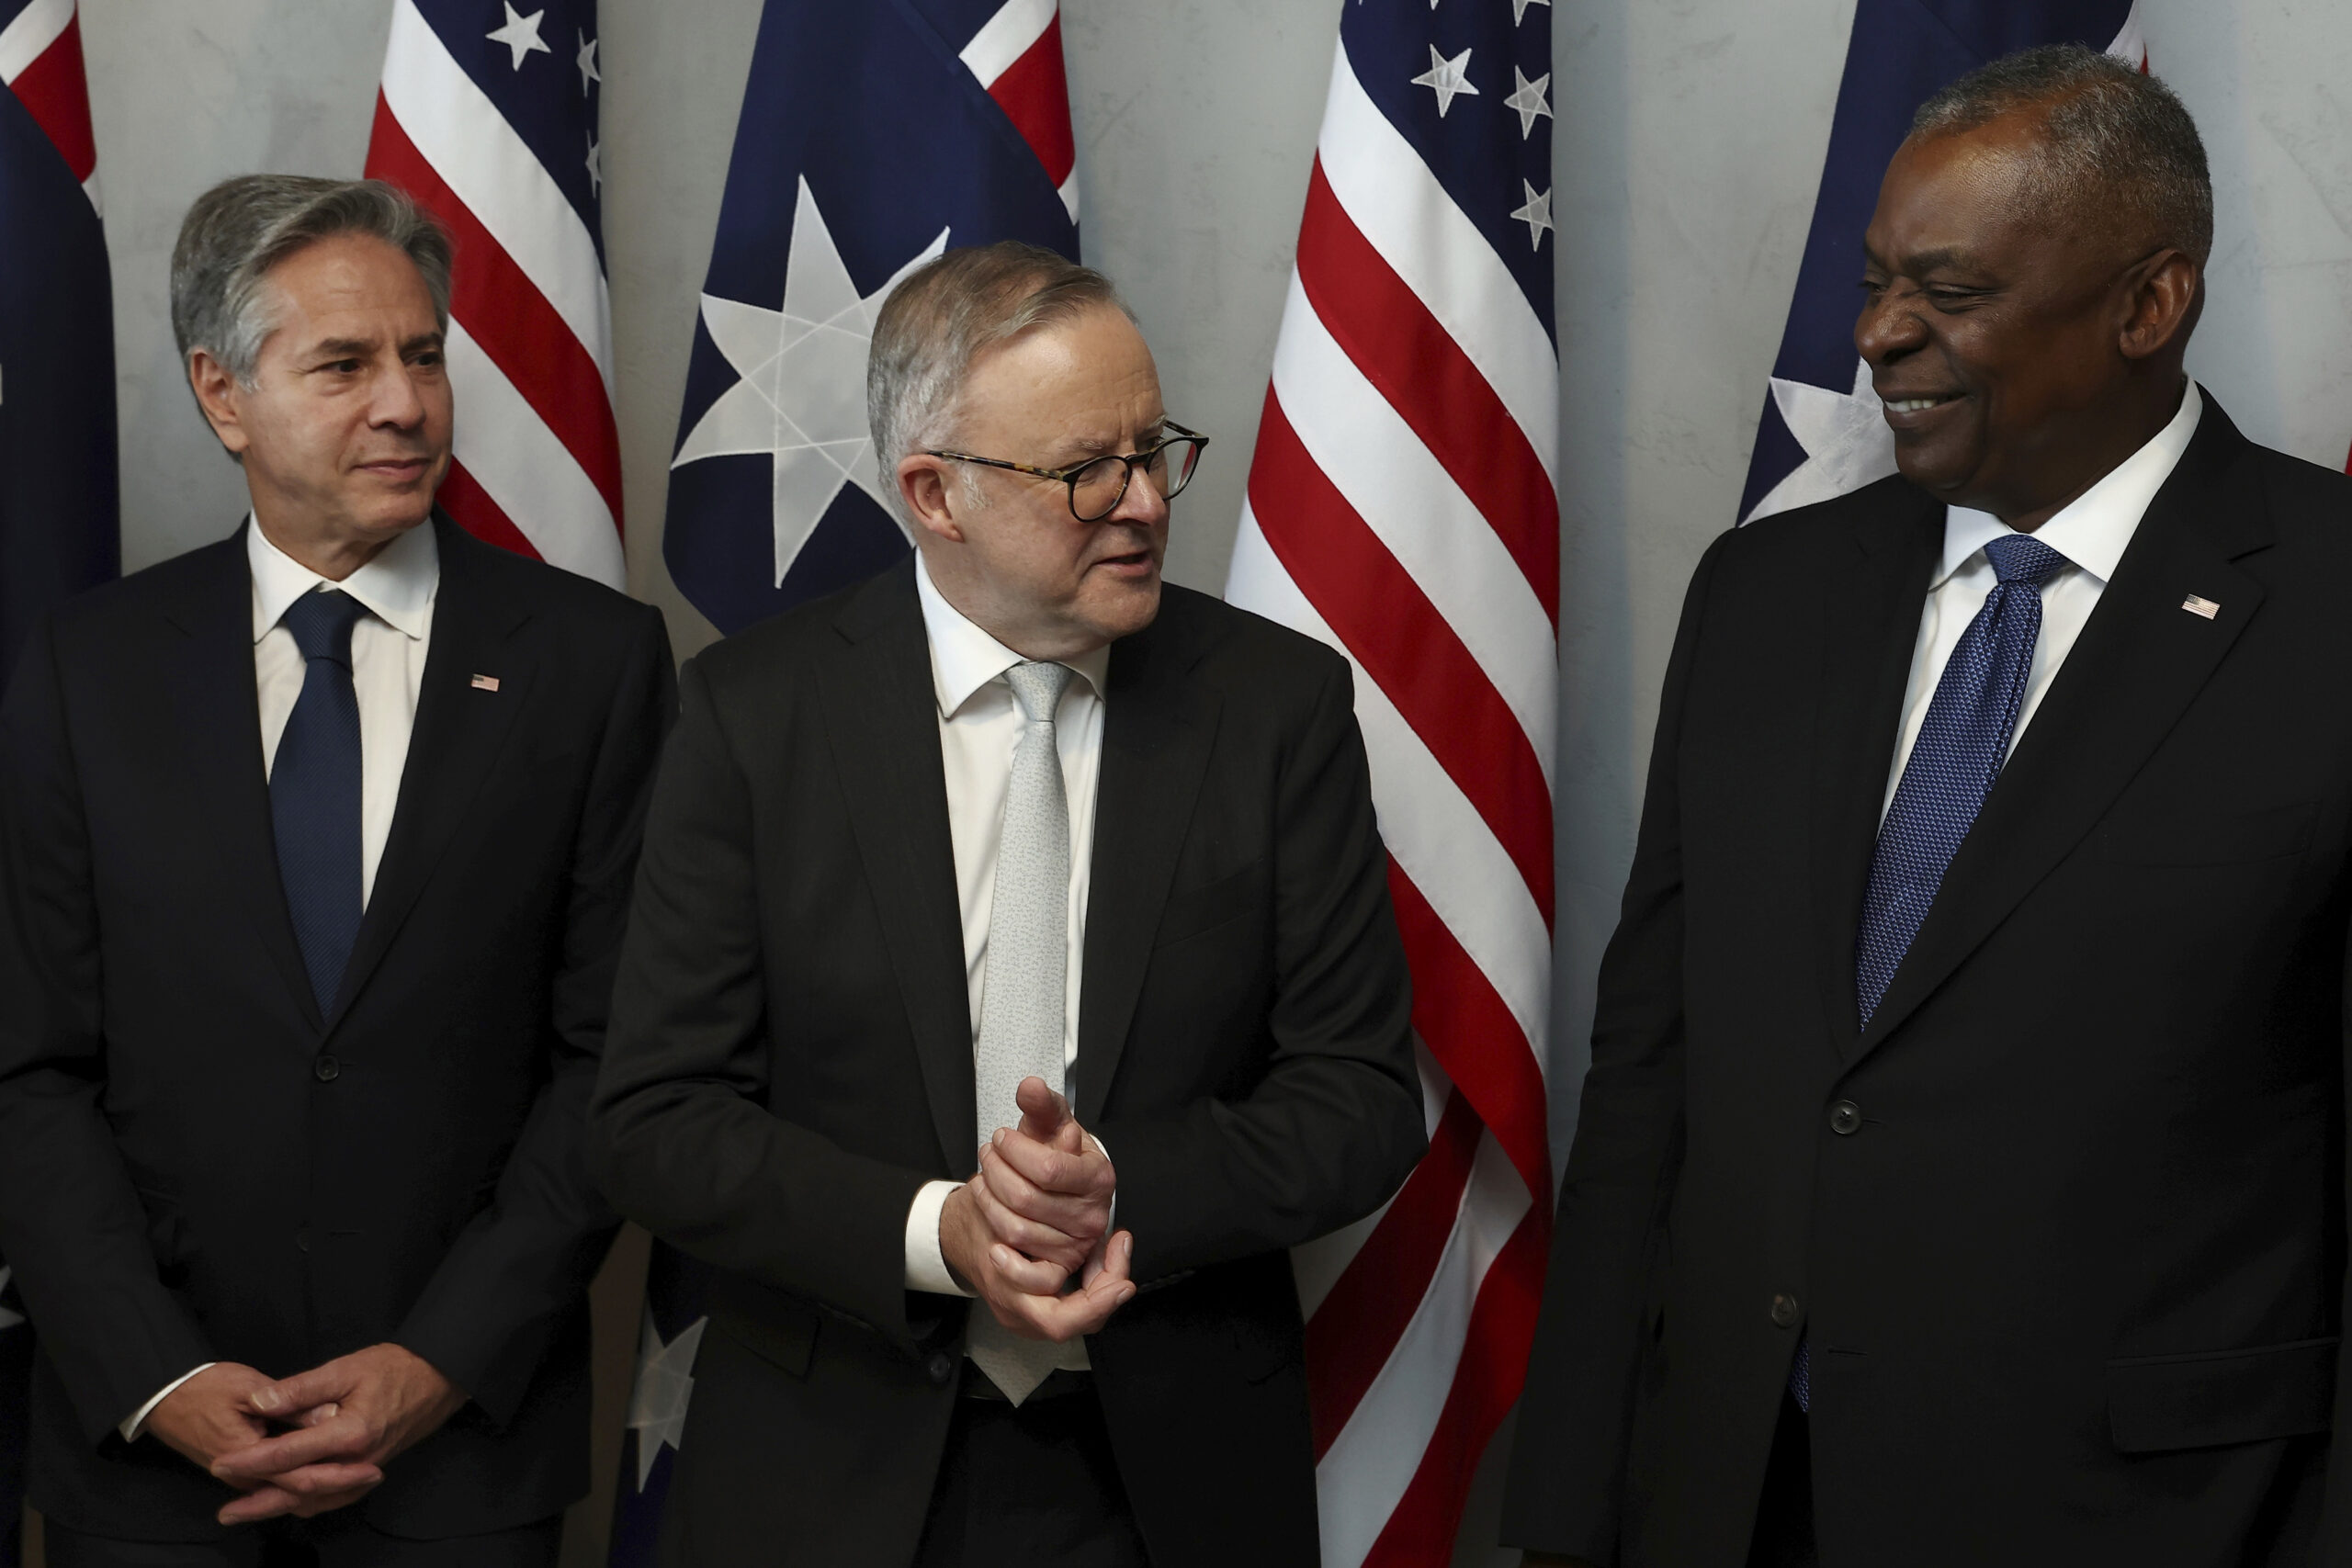 Australian Prime Minister Anthony Albanese, center, speaks with U.S. Secretary of State Antony Blin...